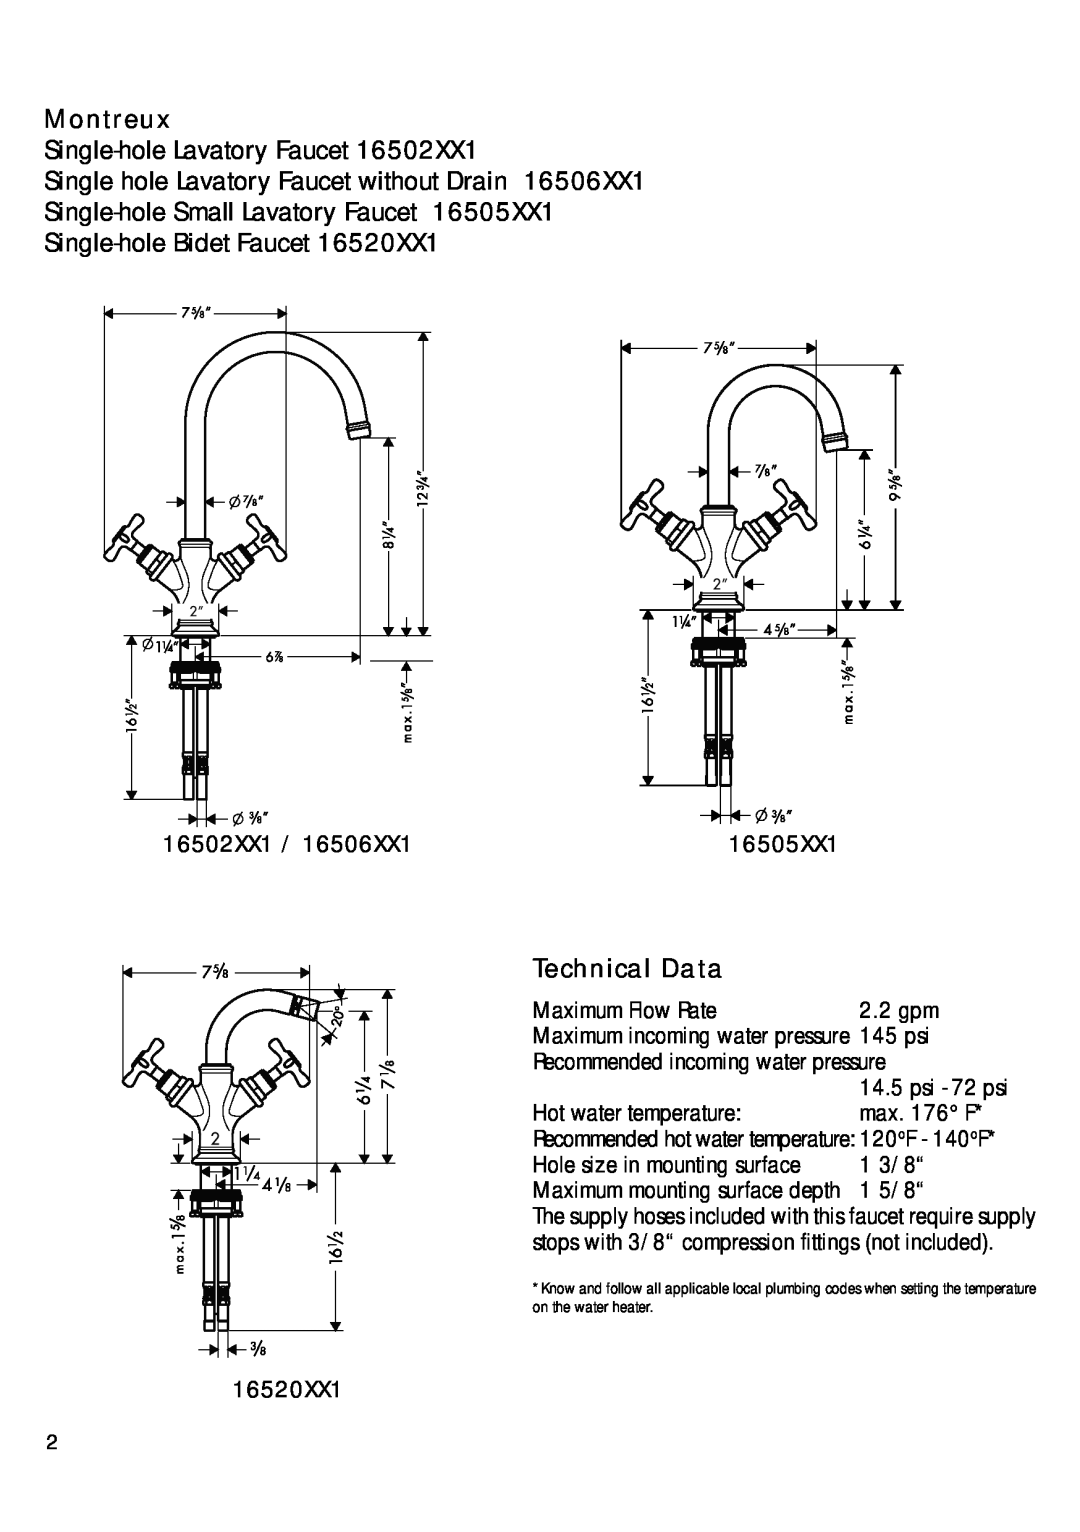 Axor 16520XX1 Single-hole Lavatory Faucet Single hole Lavatory Faucet without Drain, Technical Data, Montreux 